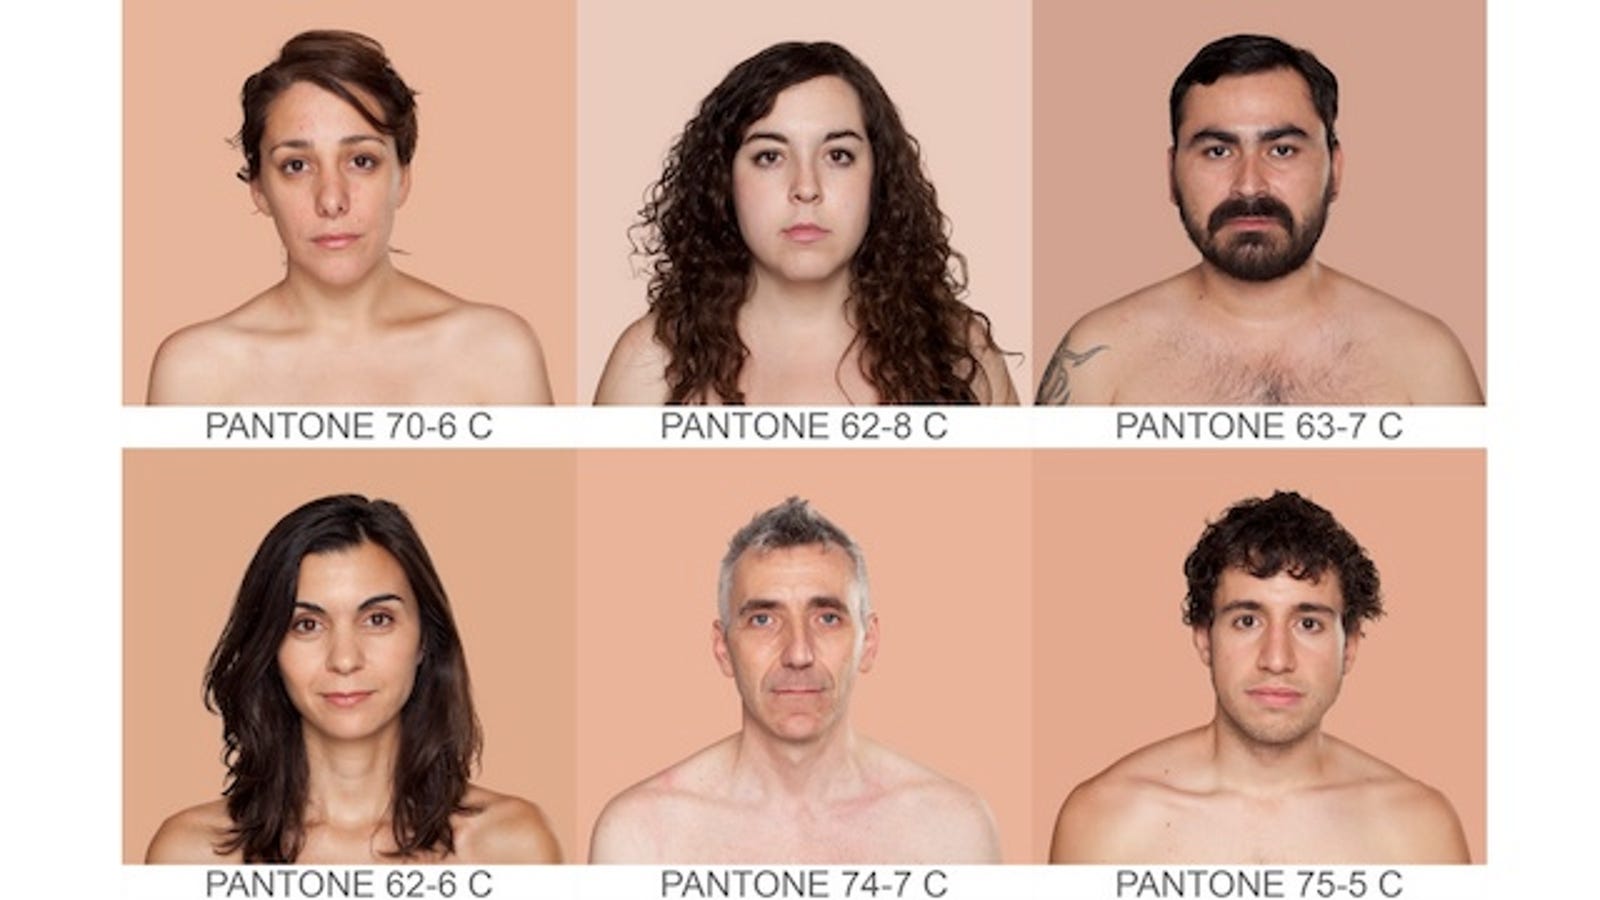 Human Skin Tones Classified As Pantone Colors